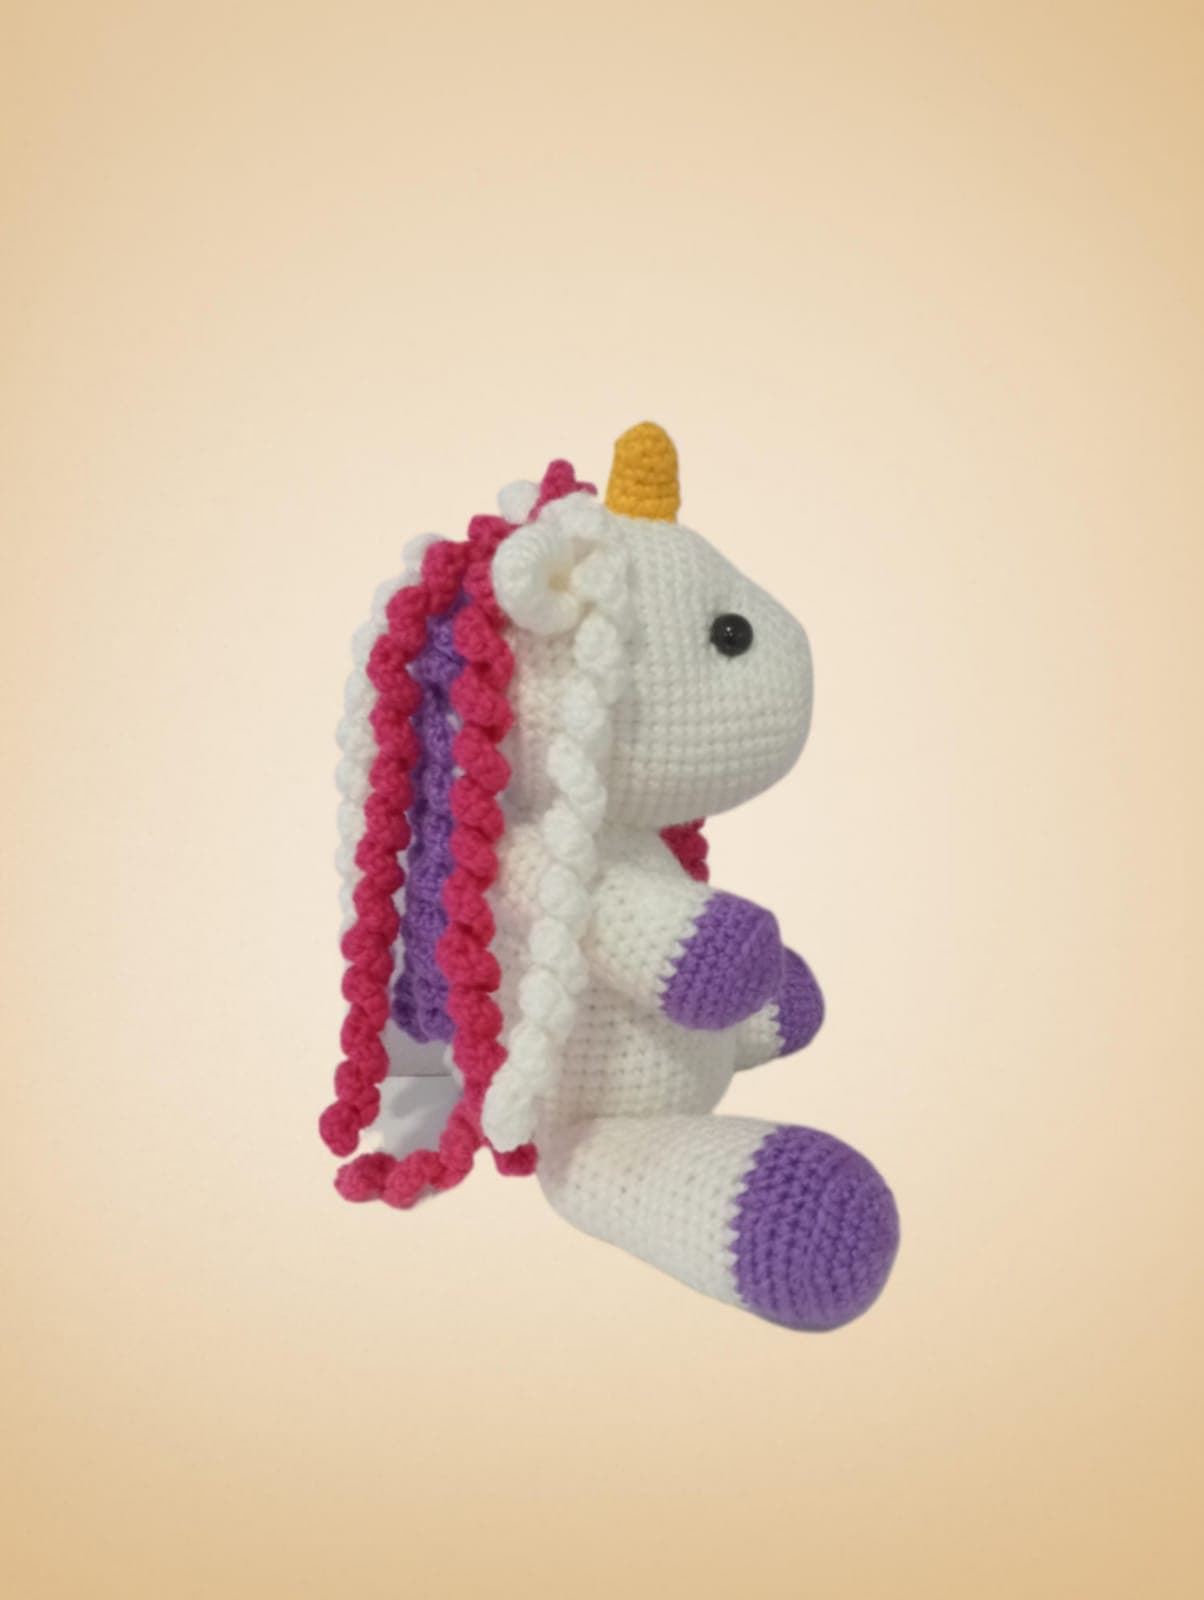 Peluche unicornio hecho a mano a ganchillo (amigurumi). - Imagen 7